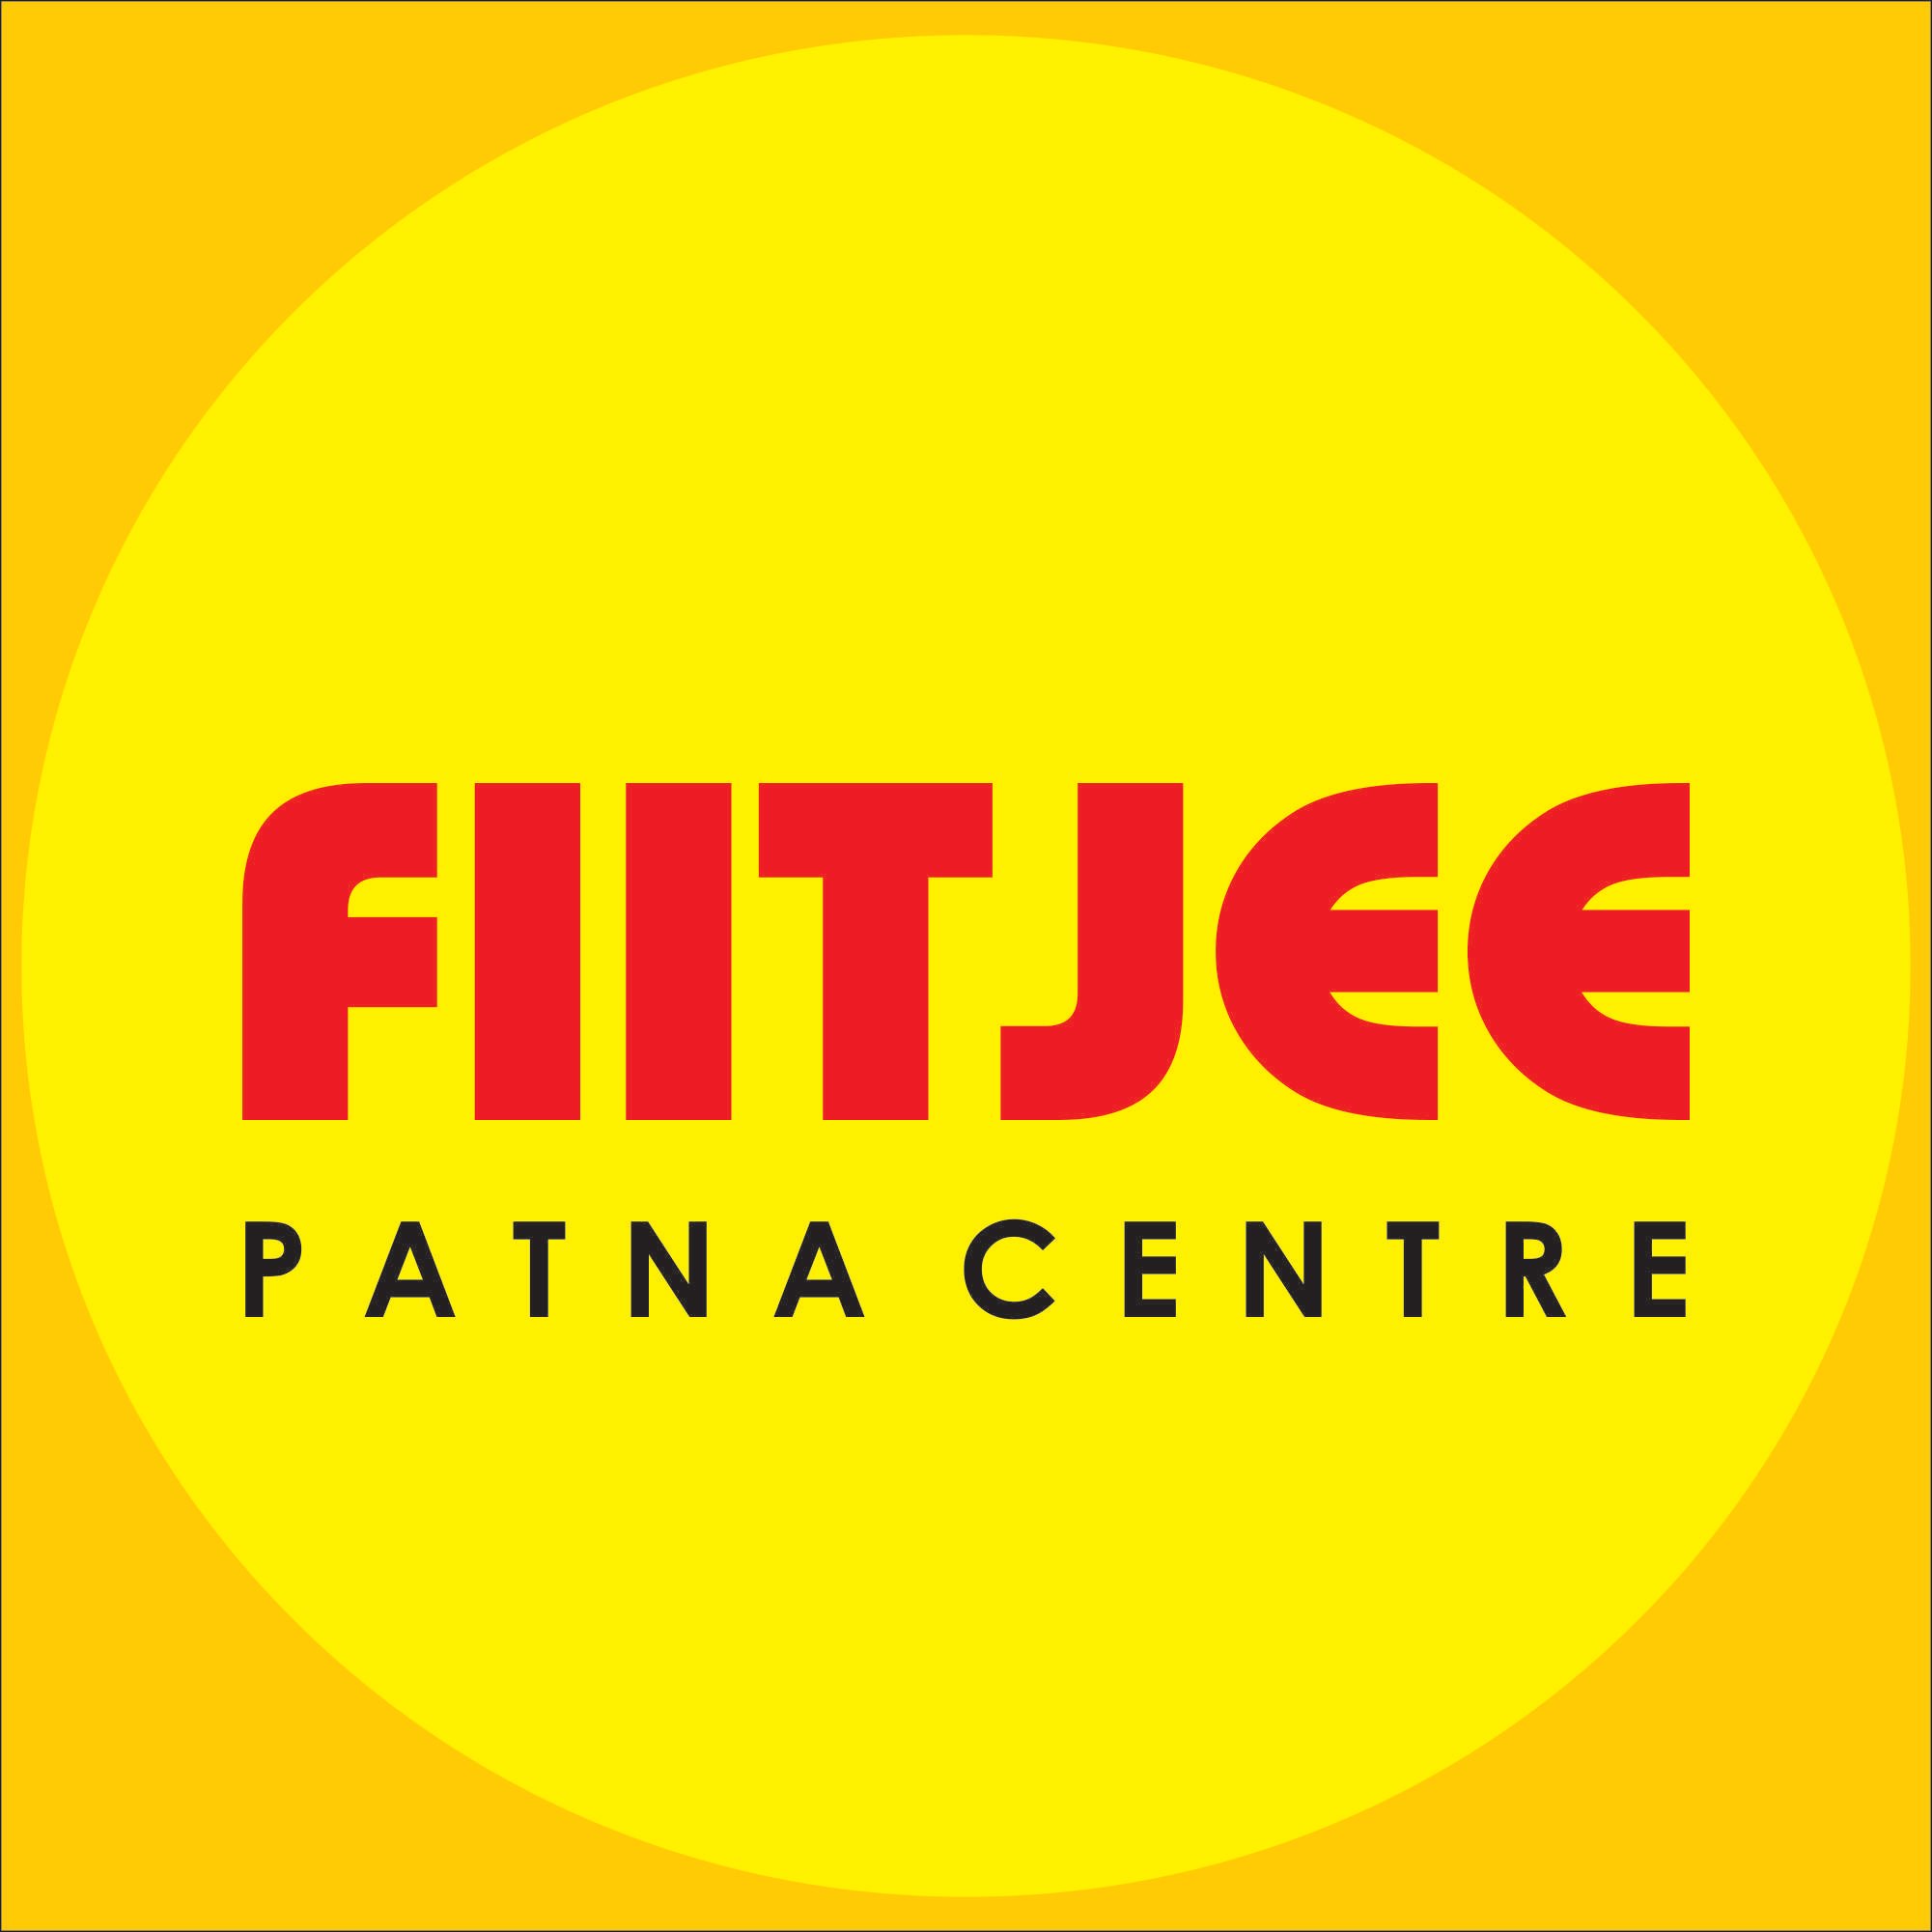 This is FIITJEE Patna official Twitter Account. Follow us to get information regarding IIT, IIT-JEE, FIITJEE Patna and other relevant informations.